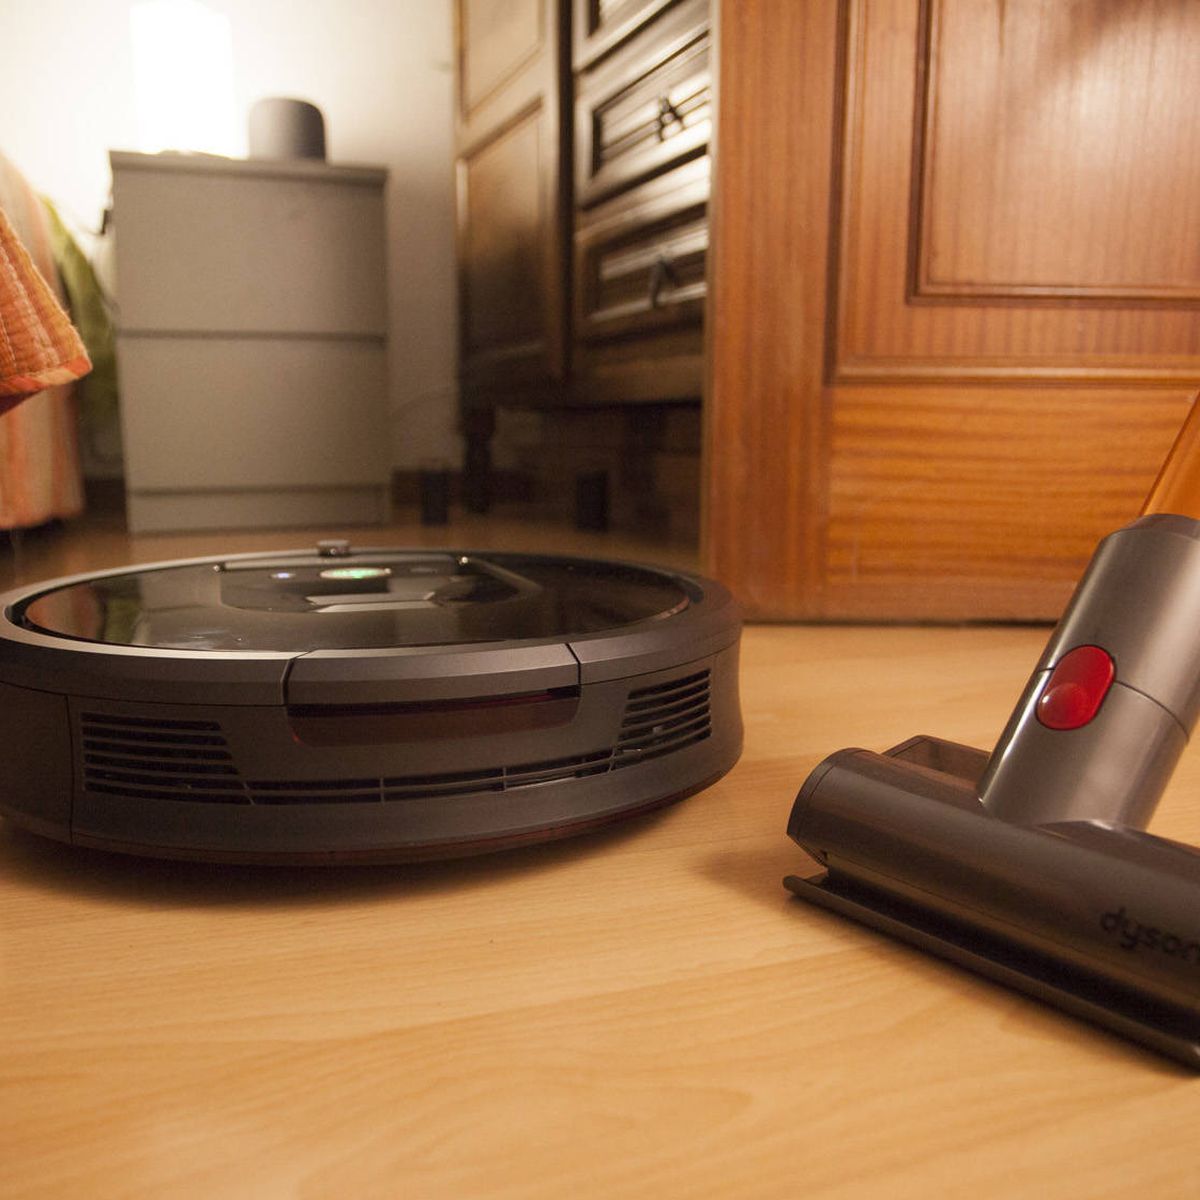 El robot aspirador Roomba 980 aúna inteligencia y potencia